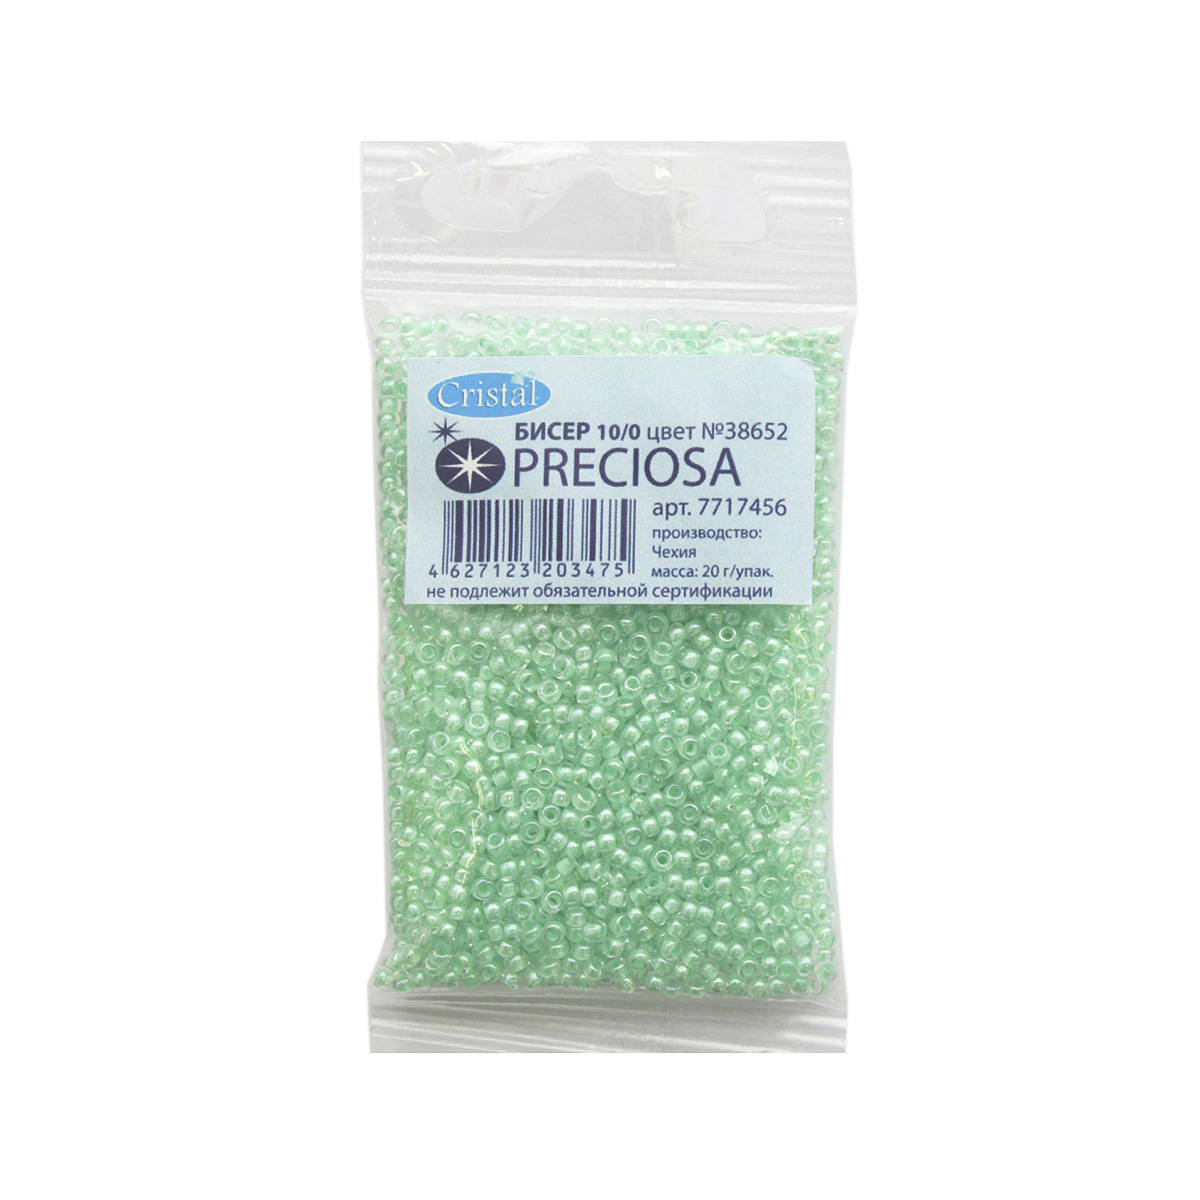 Бисер Preciosa чешский прозрачный с цветным центром 10/0 20 гр Прециоза 38652 светло-зеленый - фото 3